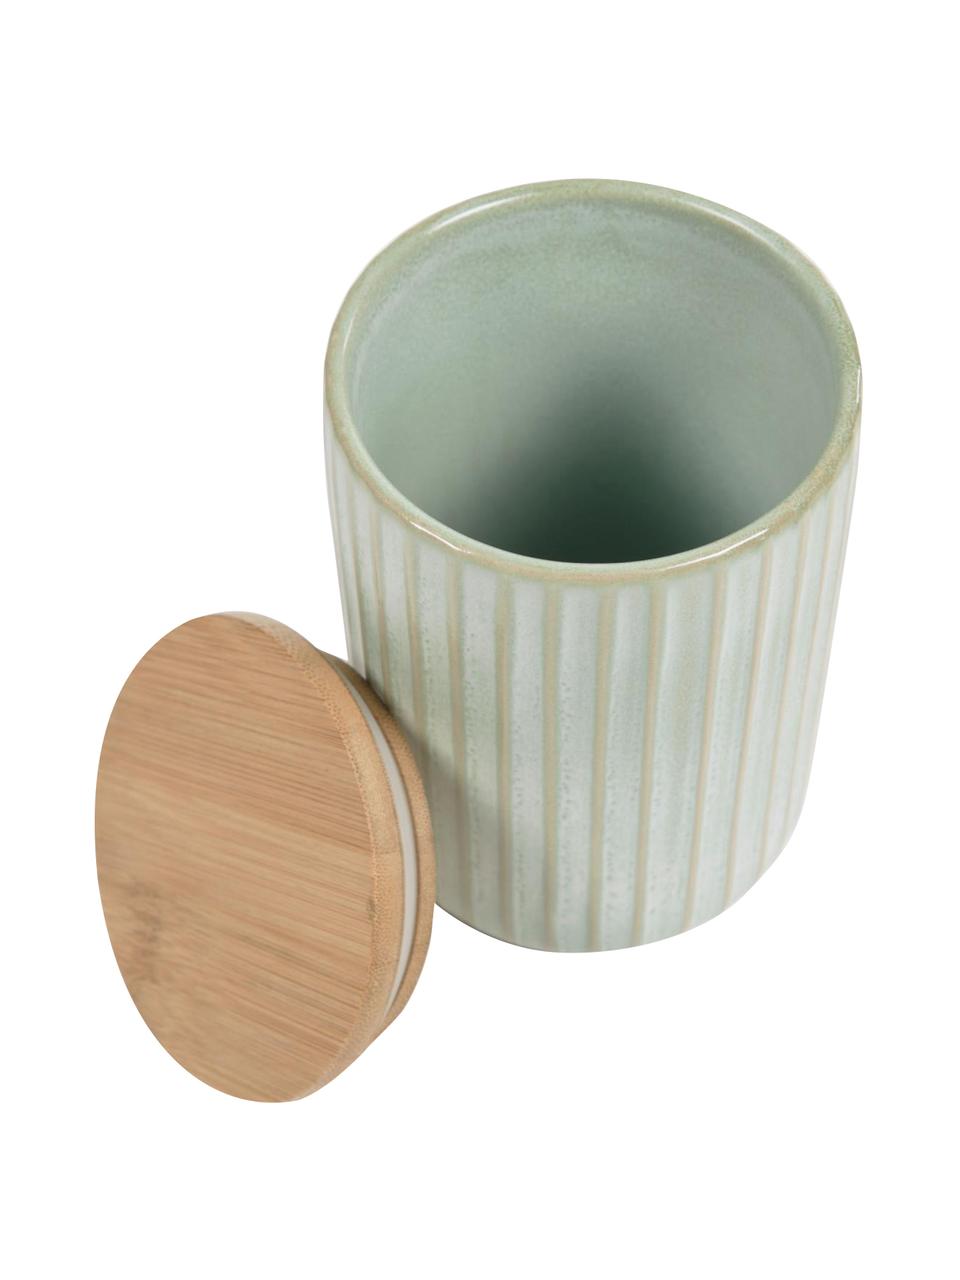 Aufbewahrungsdose Itziar aus Keramik in Hellgrün, verschiedene Grössen, Dose: Keramik, Deckel: Holz, Hellgrün, Ø 10 x H 14 cm, 700 ml